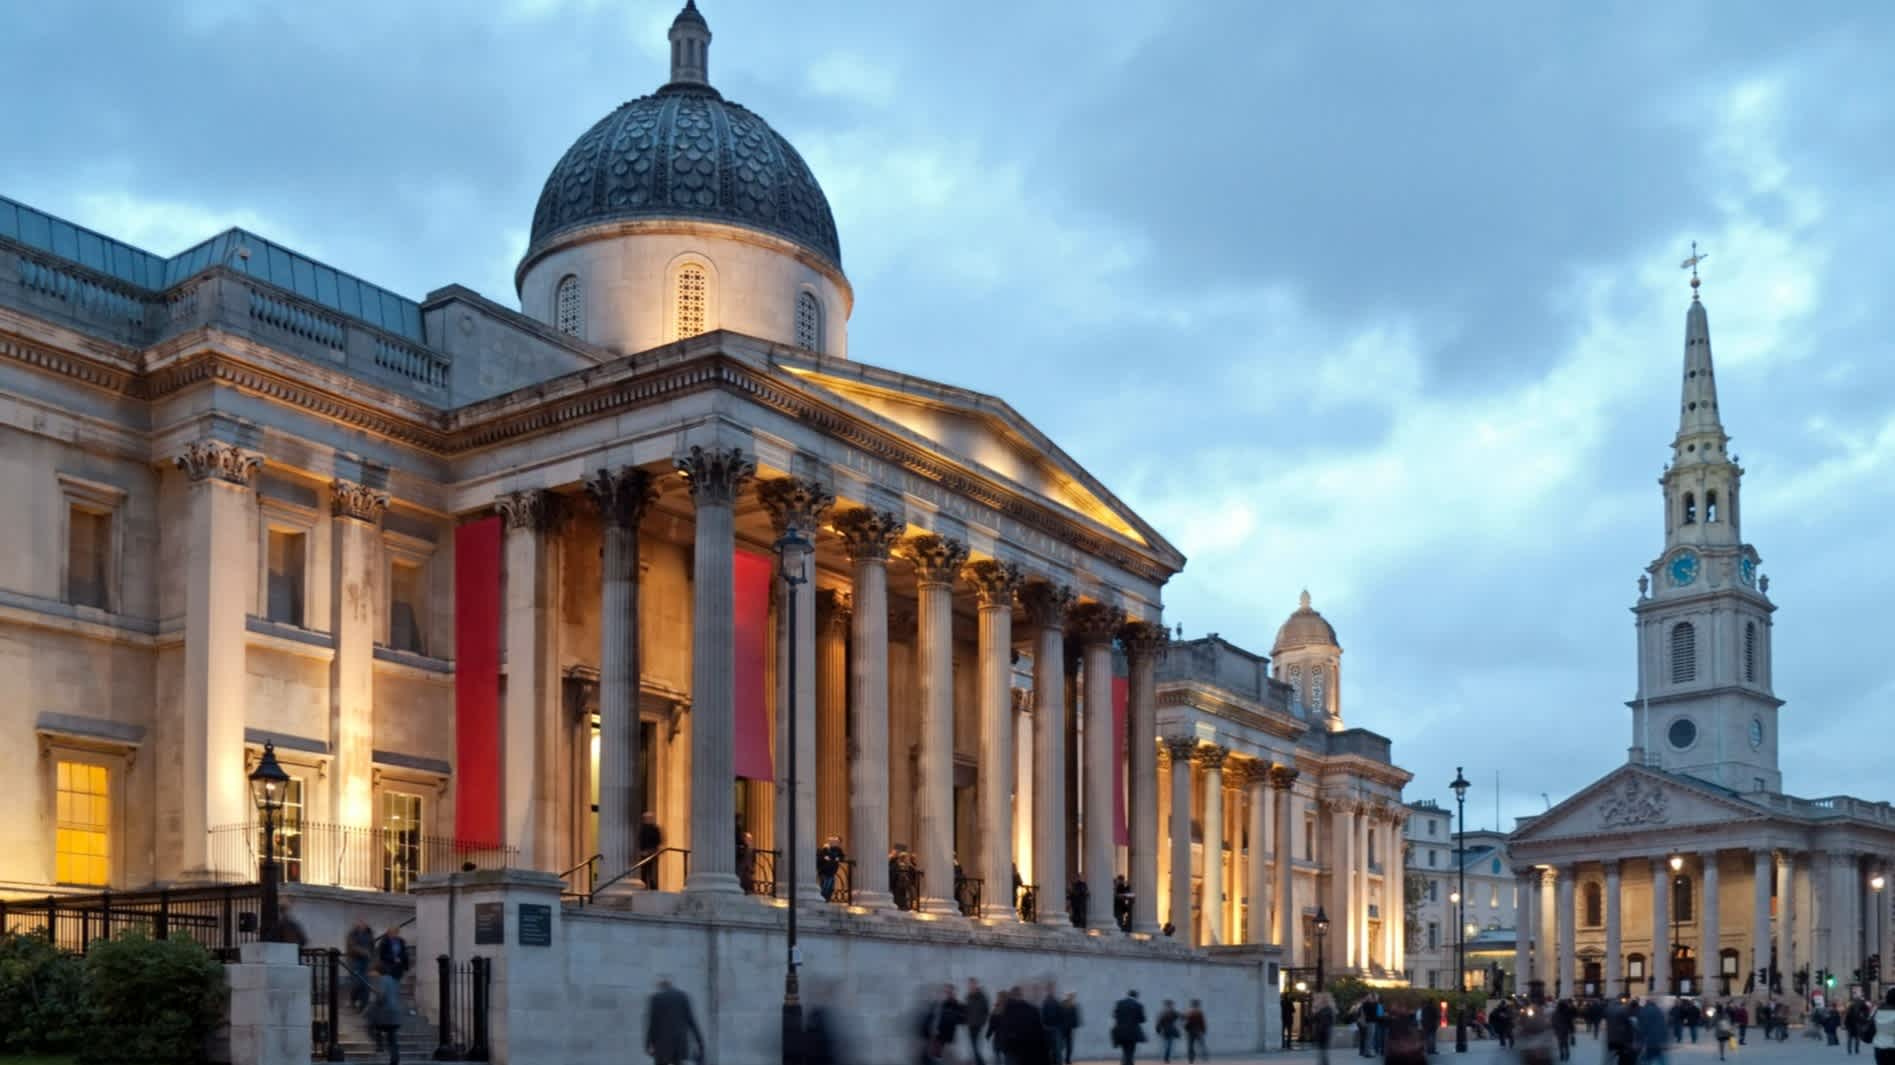 Die National Gallery und die Kirche St. Martin's in the Fields in der Abenddämmerung. Trafalgar Square, London, England, Großbritannien